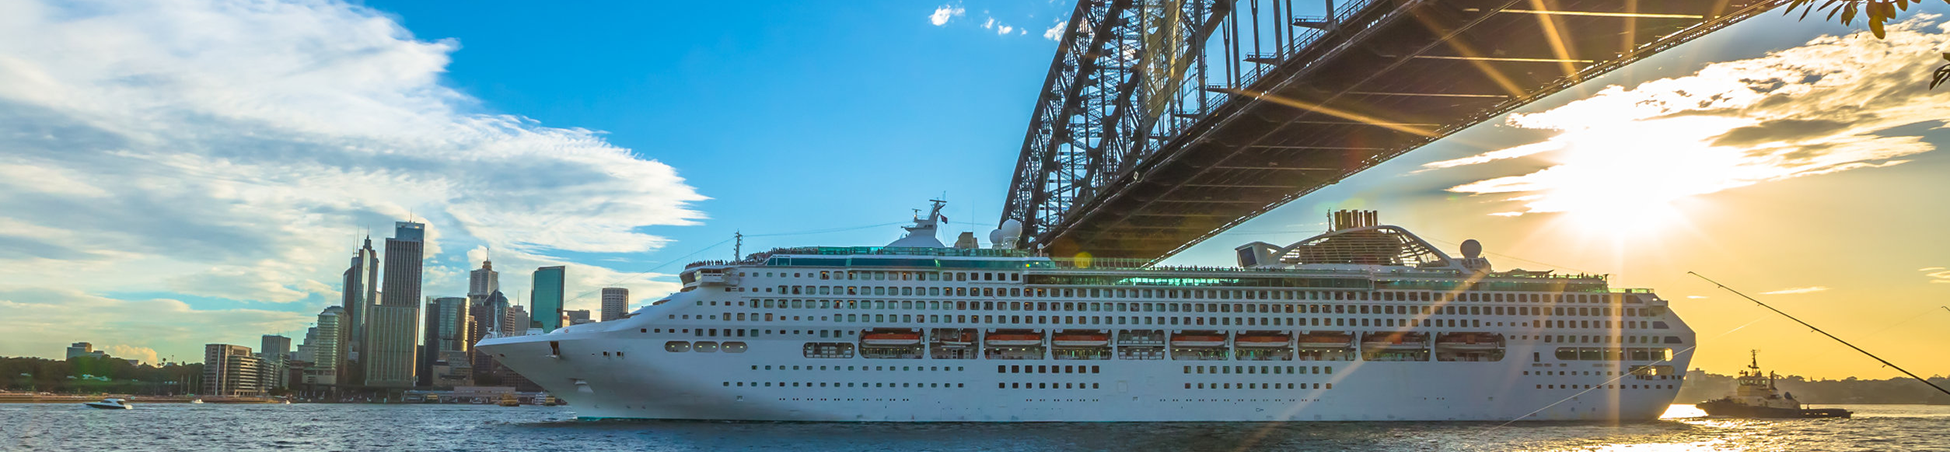 Sydney Cruise Ship Parking, Cruise Ship Parking Sydney, Parking Sydney Airport Cruise